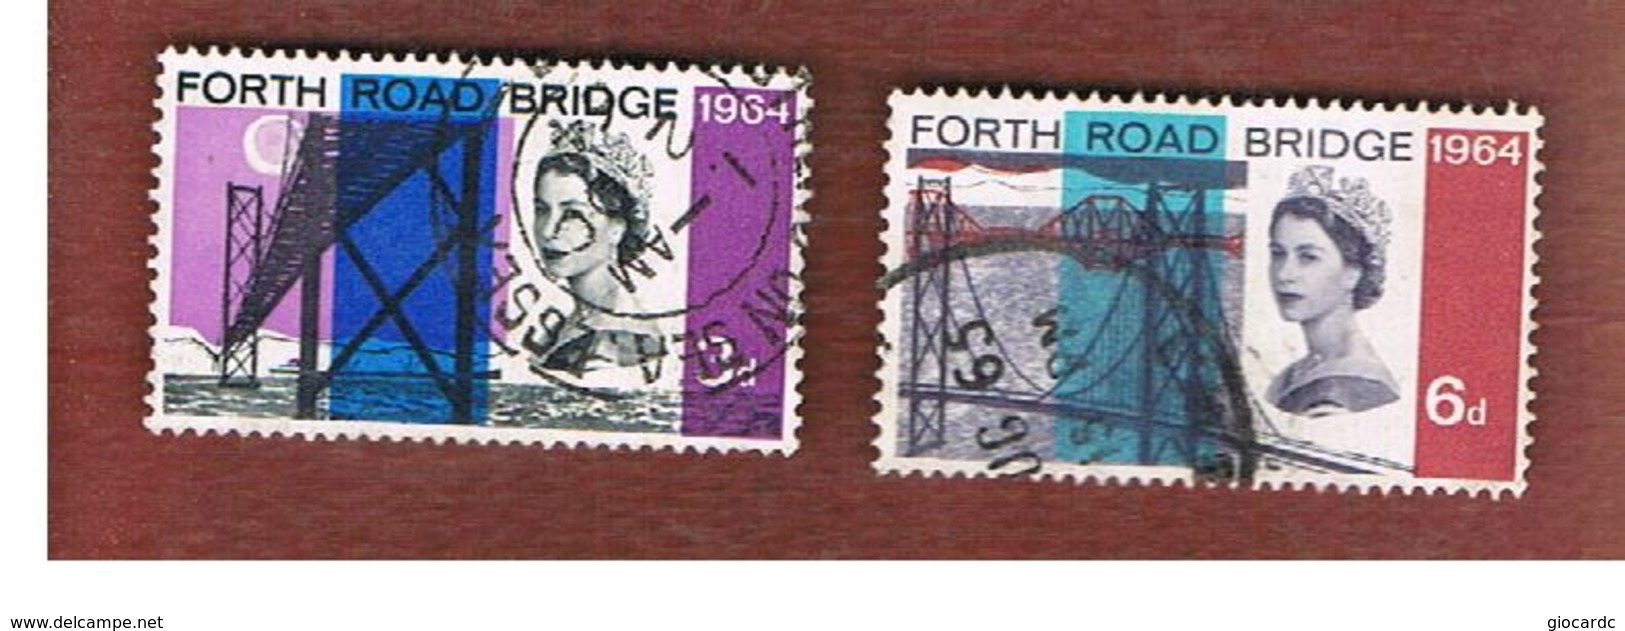 GRAN BRETAGNA (UNITED KINGDOM) -  SG 659.660  -  1964  FORTH  ROAD BRIDGE (COMPLET SET OF 2)    - USED° - Usati